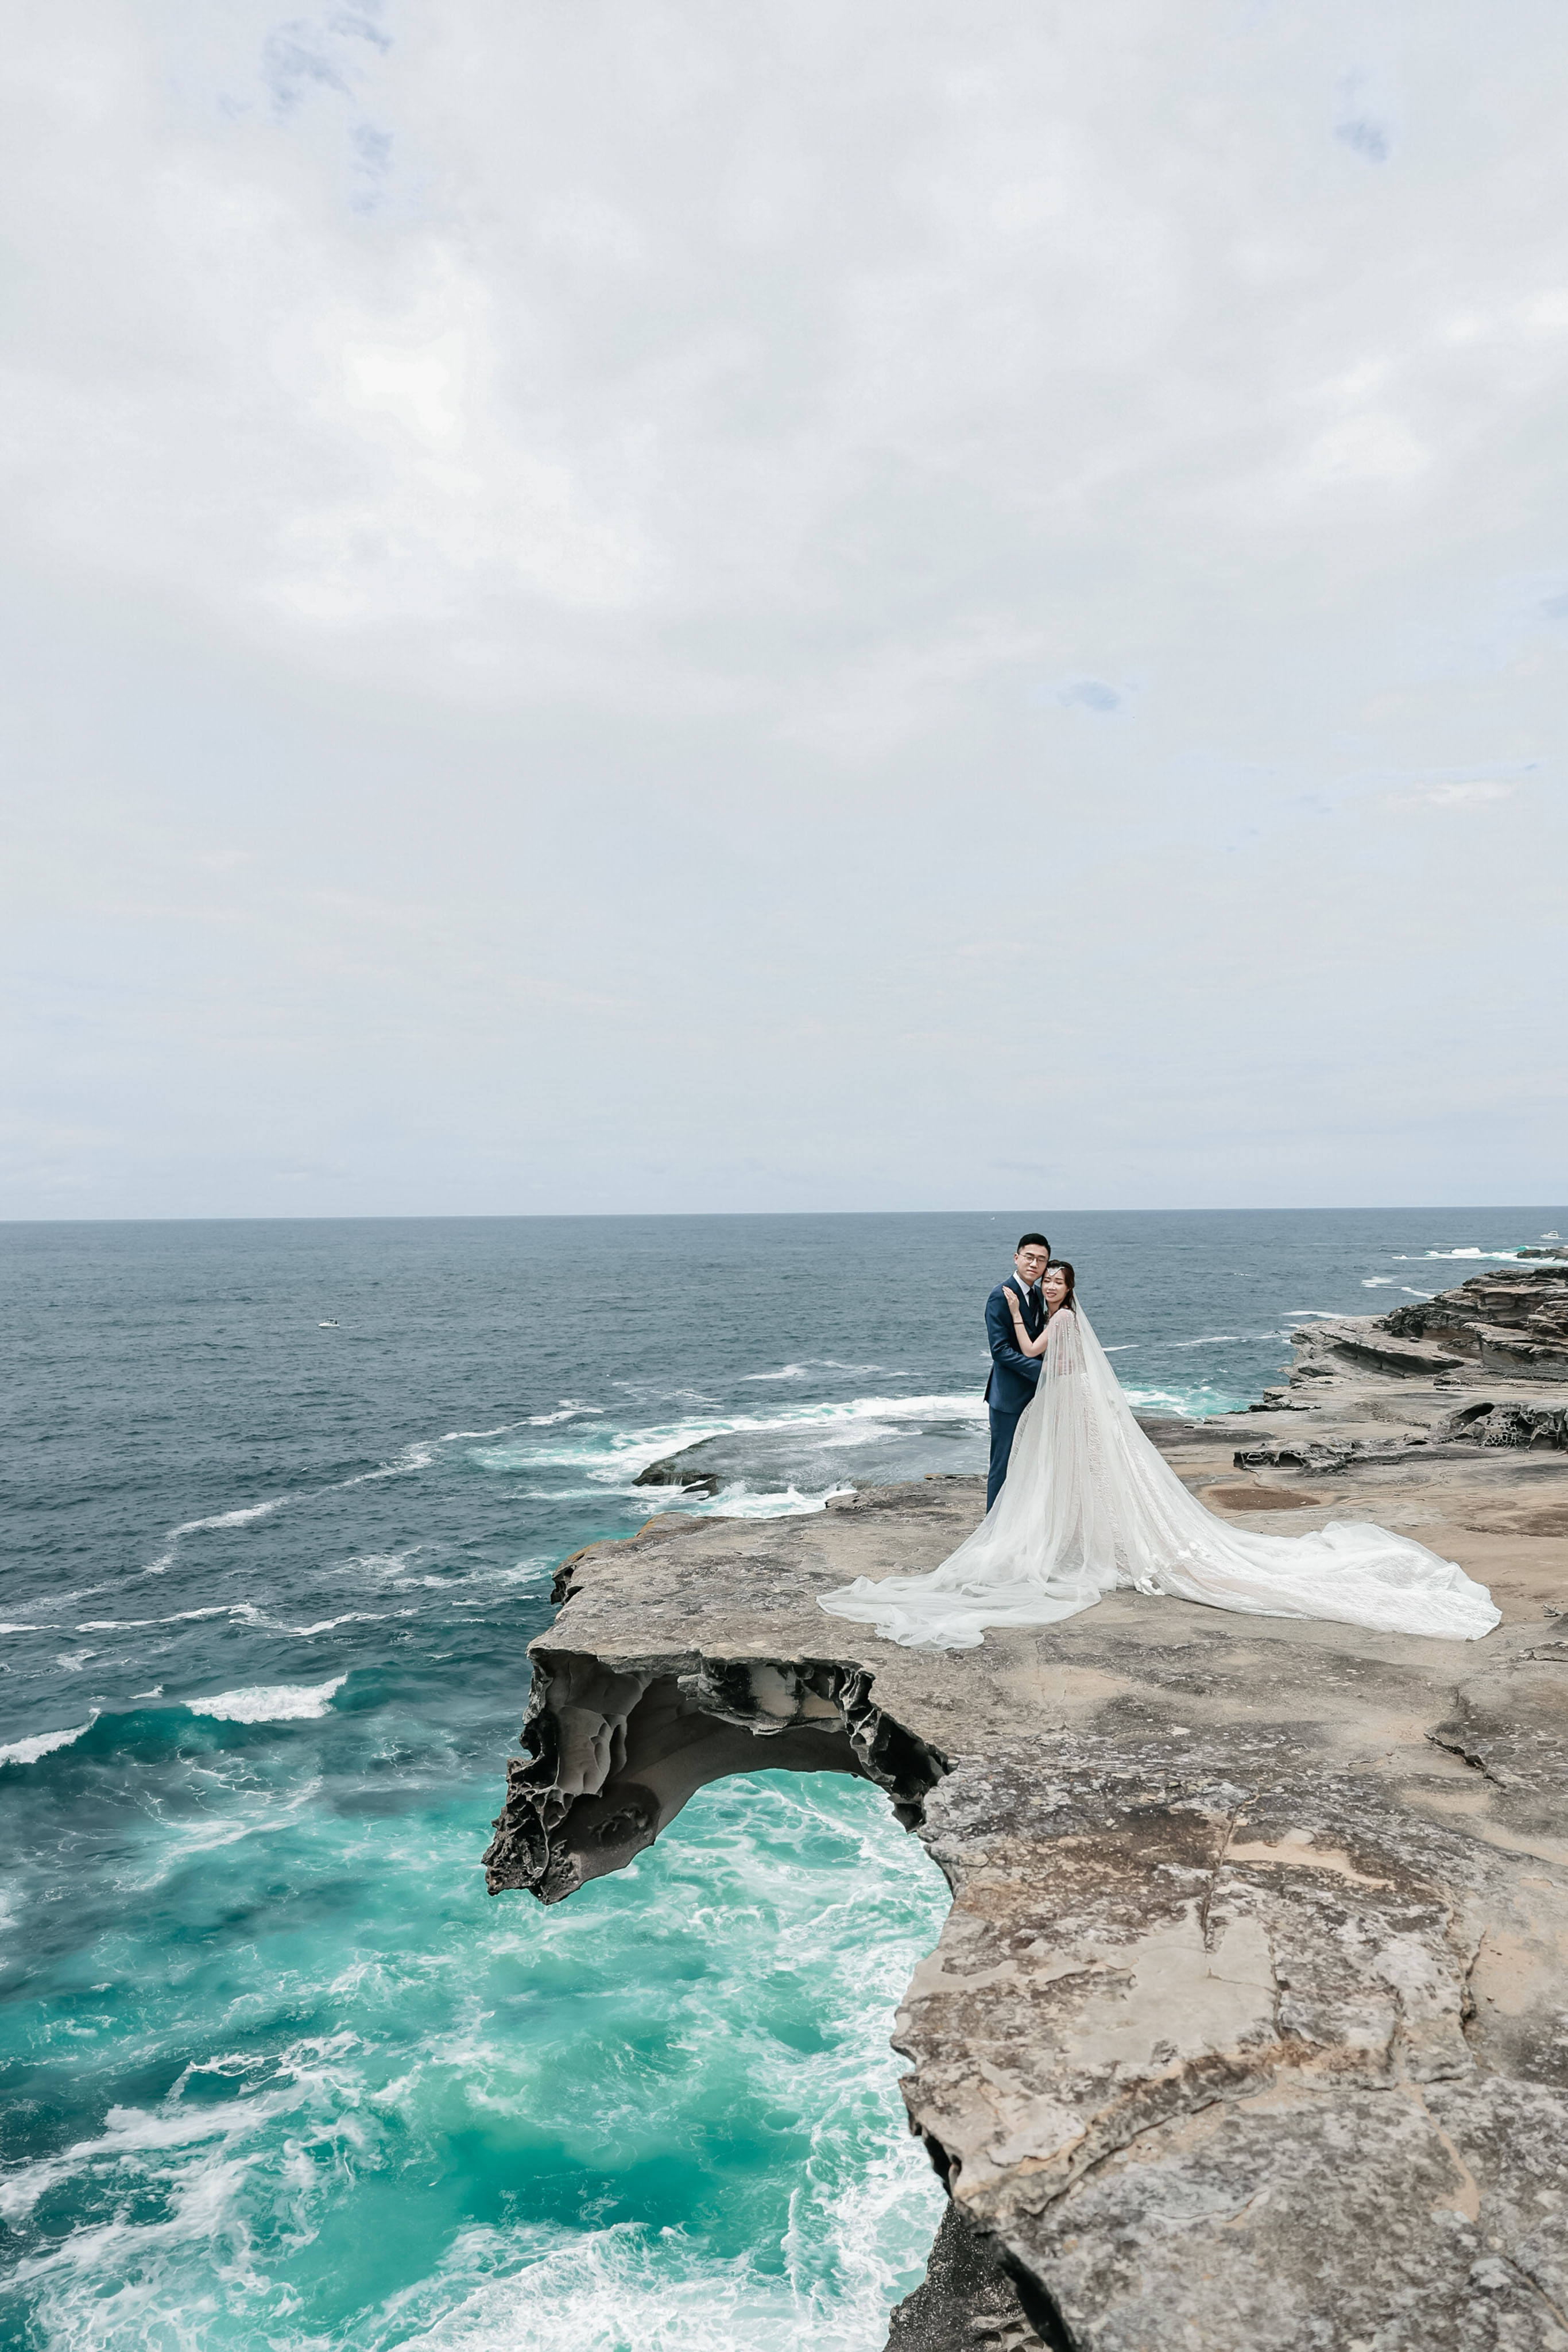 悉尼顶尖婚纱婚礼摄影|婚礼摄像|婚礼布置策划|商业广告摄像TVC|房地产广告摄影摄像|视频制作